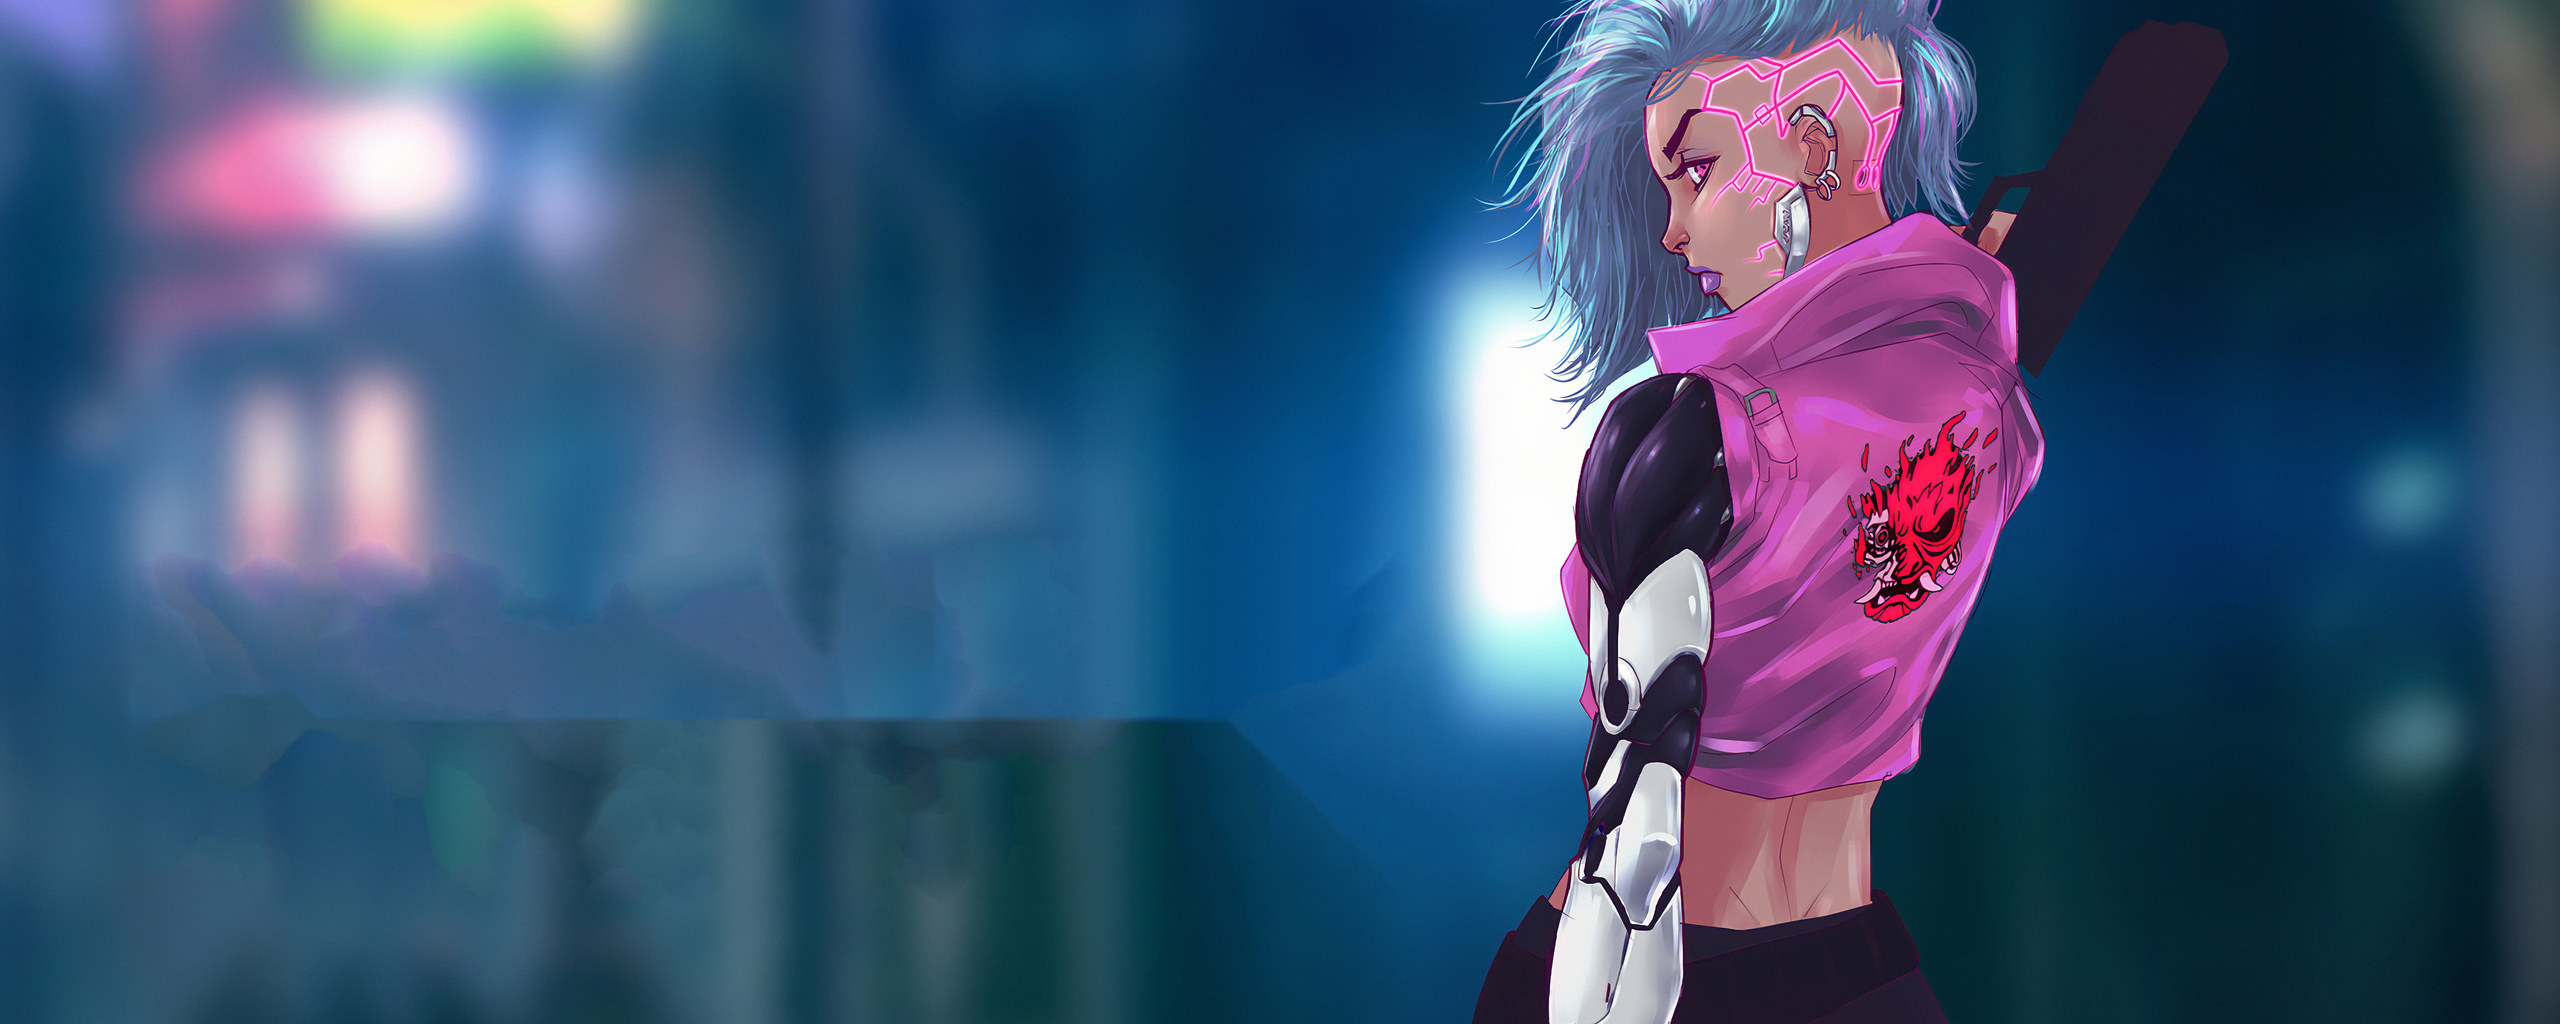 cyberpunk-pink-hair-girl-5x.jpg